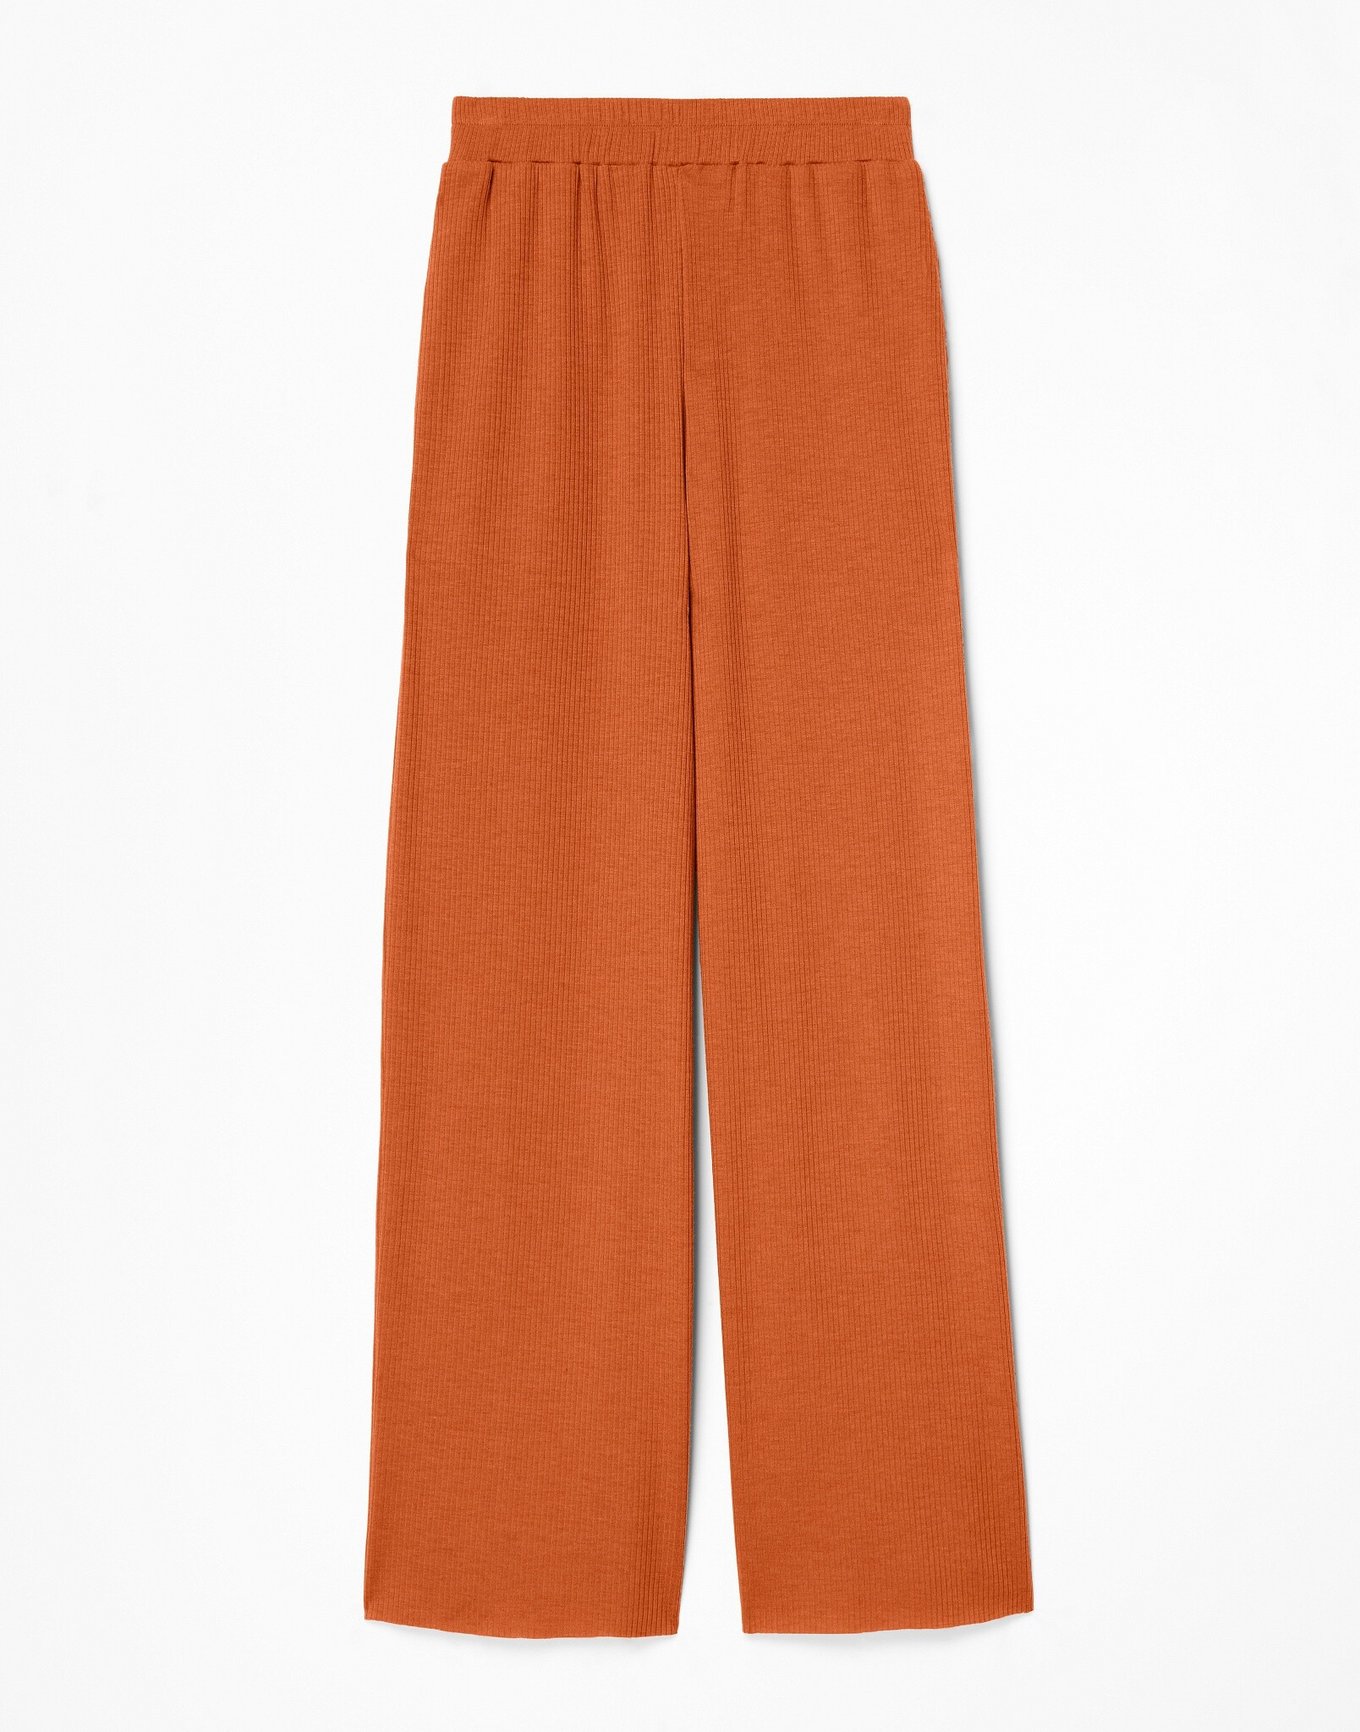 Westray Trousers | Plain Linen, Orange